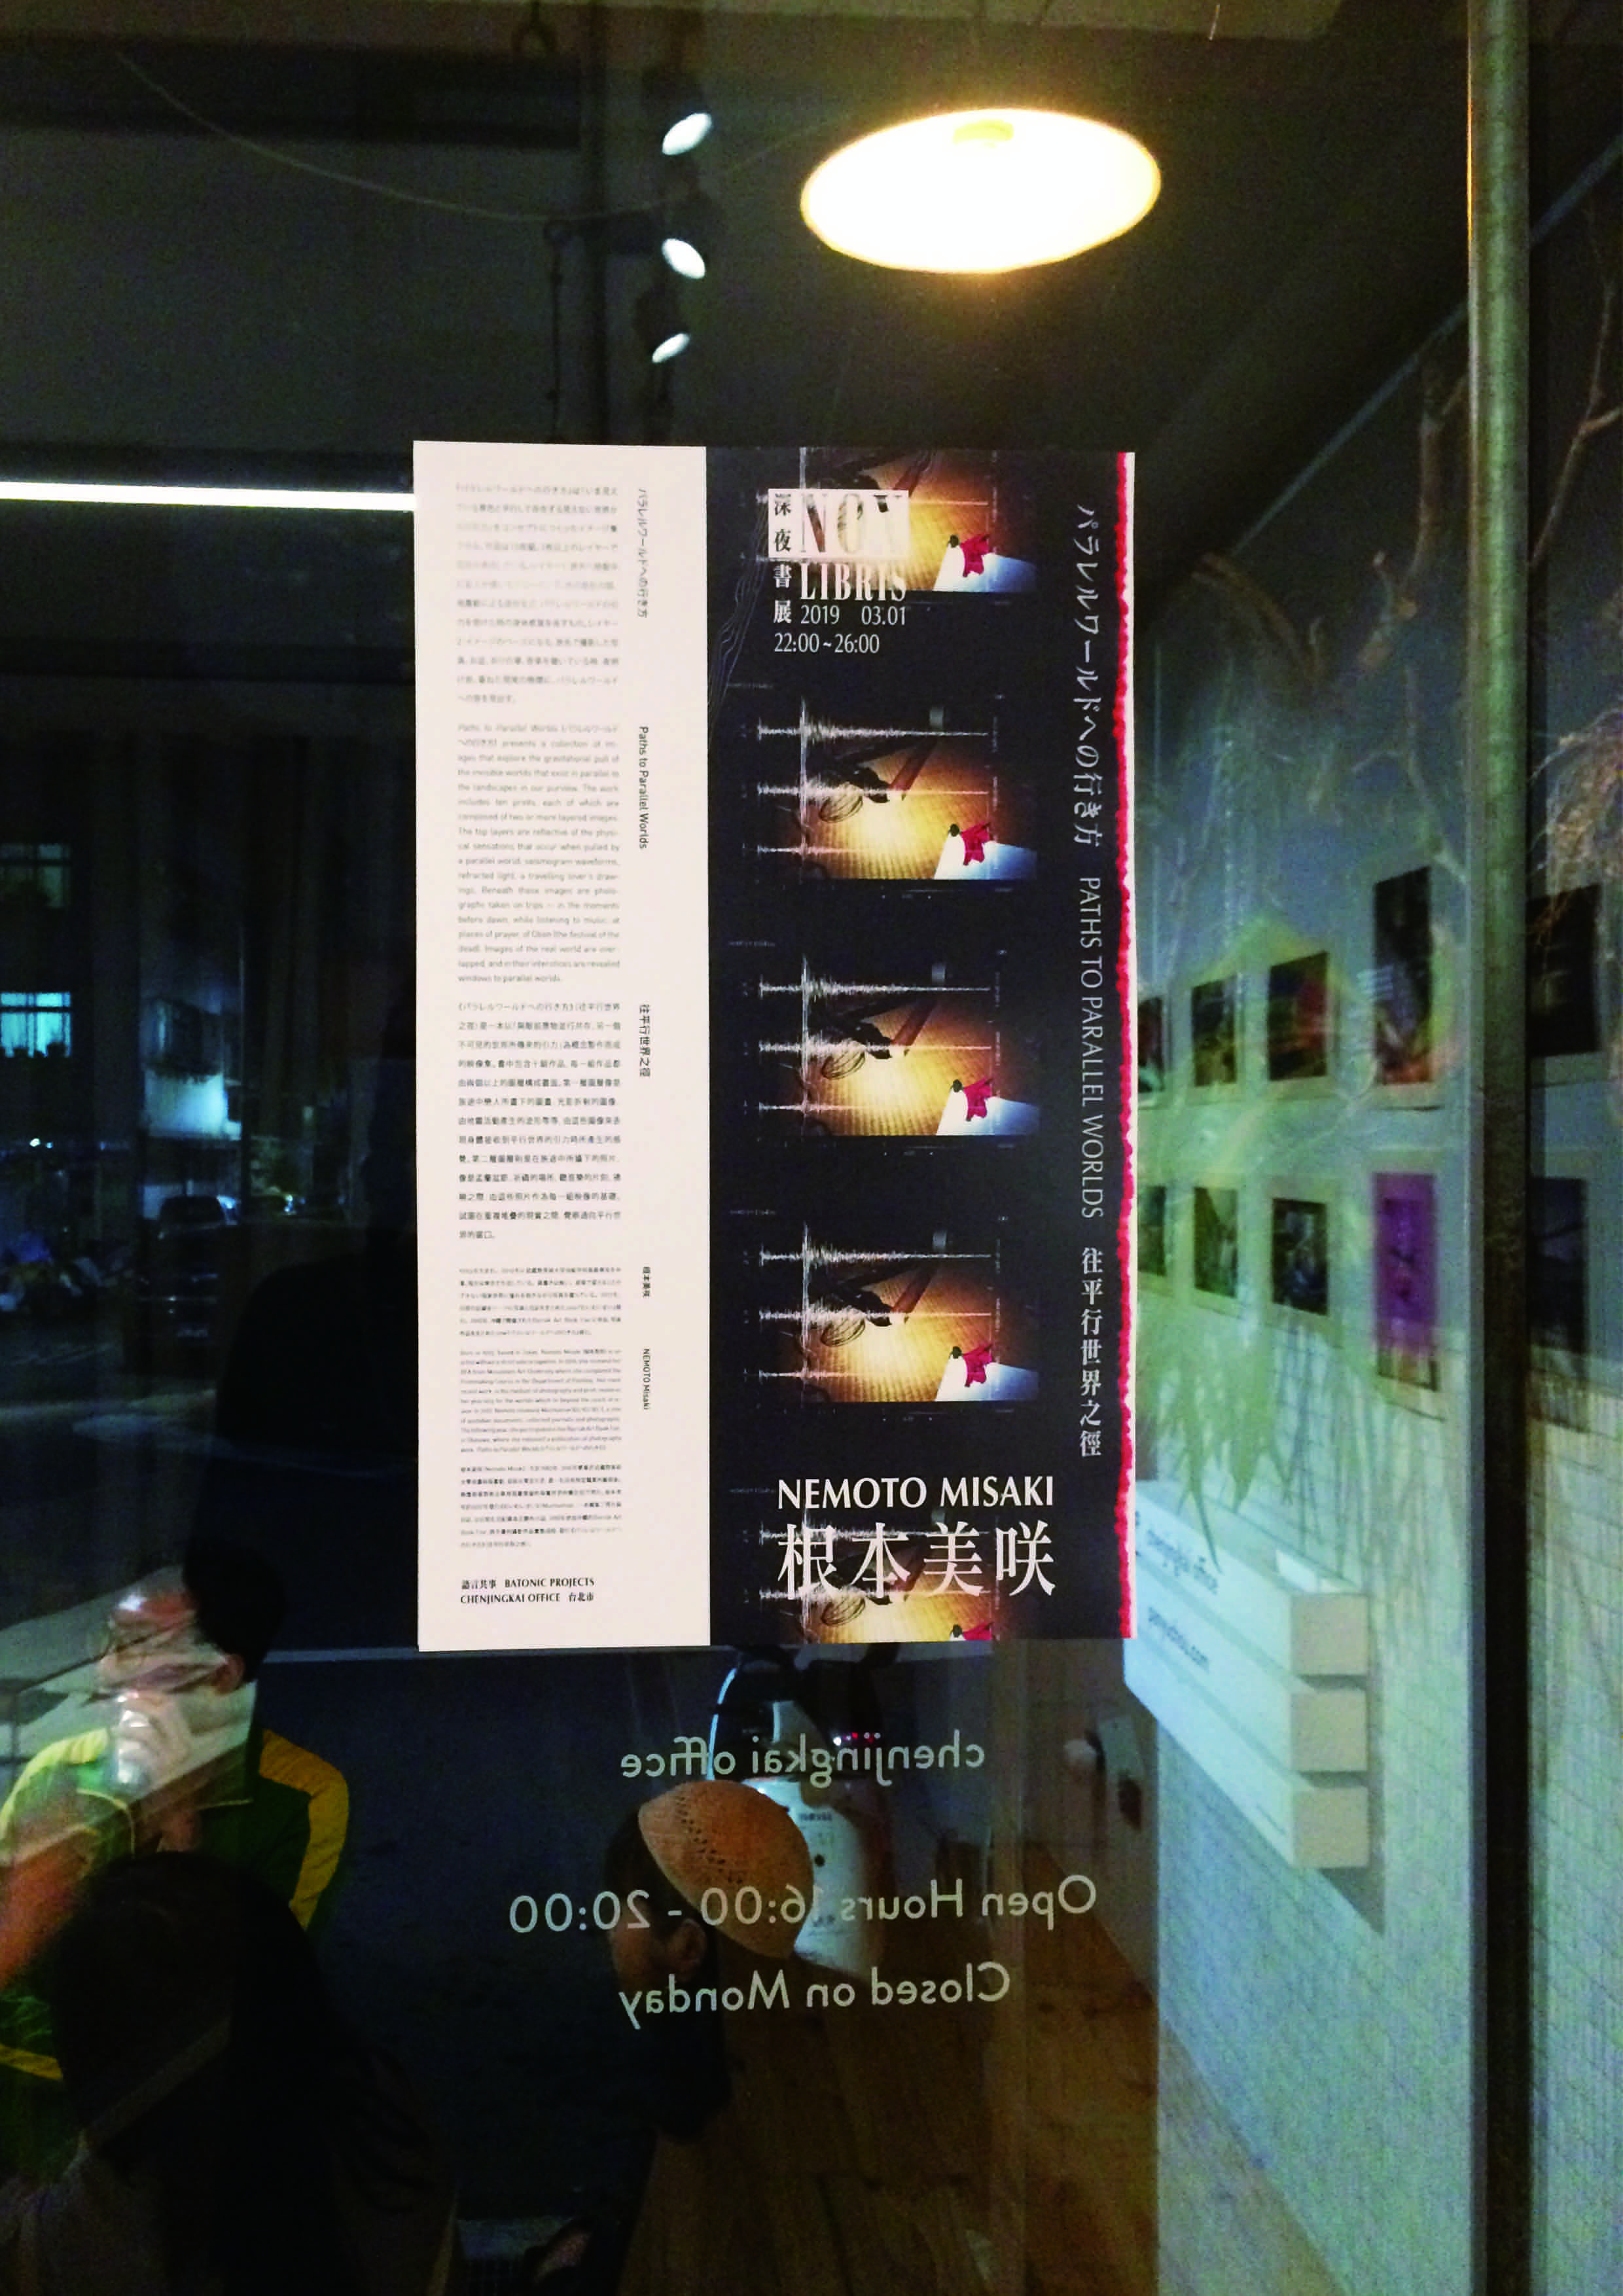 深夜書展 Nox Libris: Nemoto Misaki 根本美咲 — パラレルワールドへの行き方 Paths to Parallel Worlds